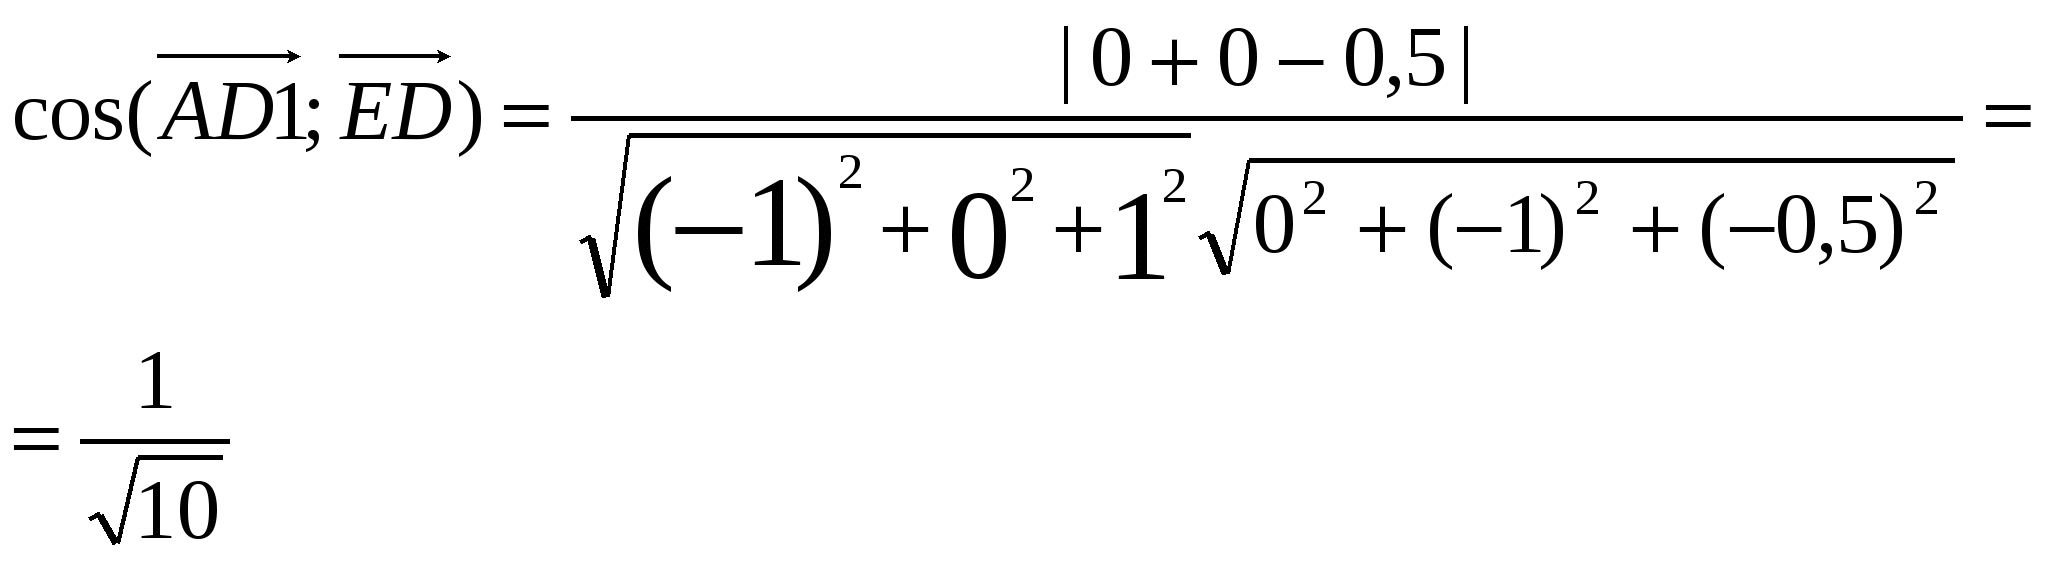 Решение С2 на ЕГЭ по математике